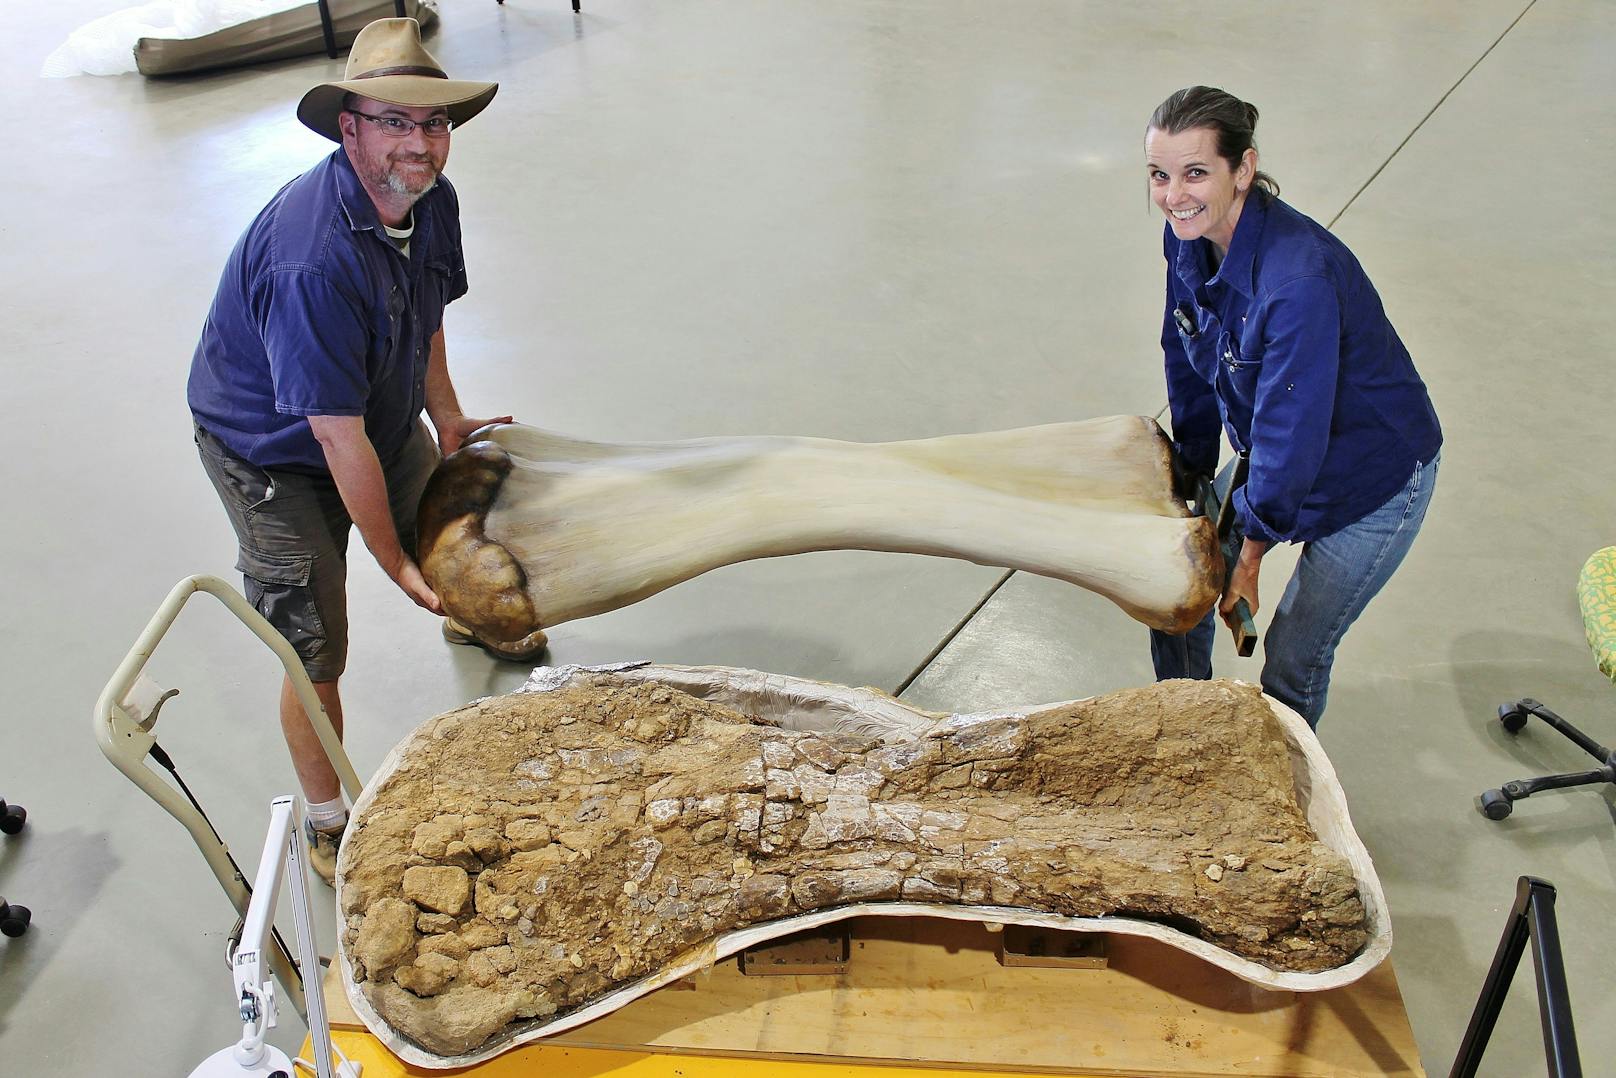 Das australische Ehepaar Scott Hocknull und Robyn Mackenzie hat Knochenteile eines Riesen-Dinosauriers gefunden.